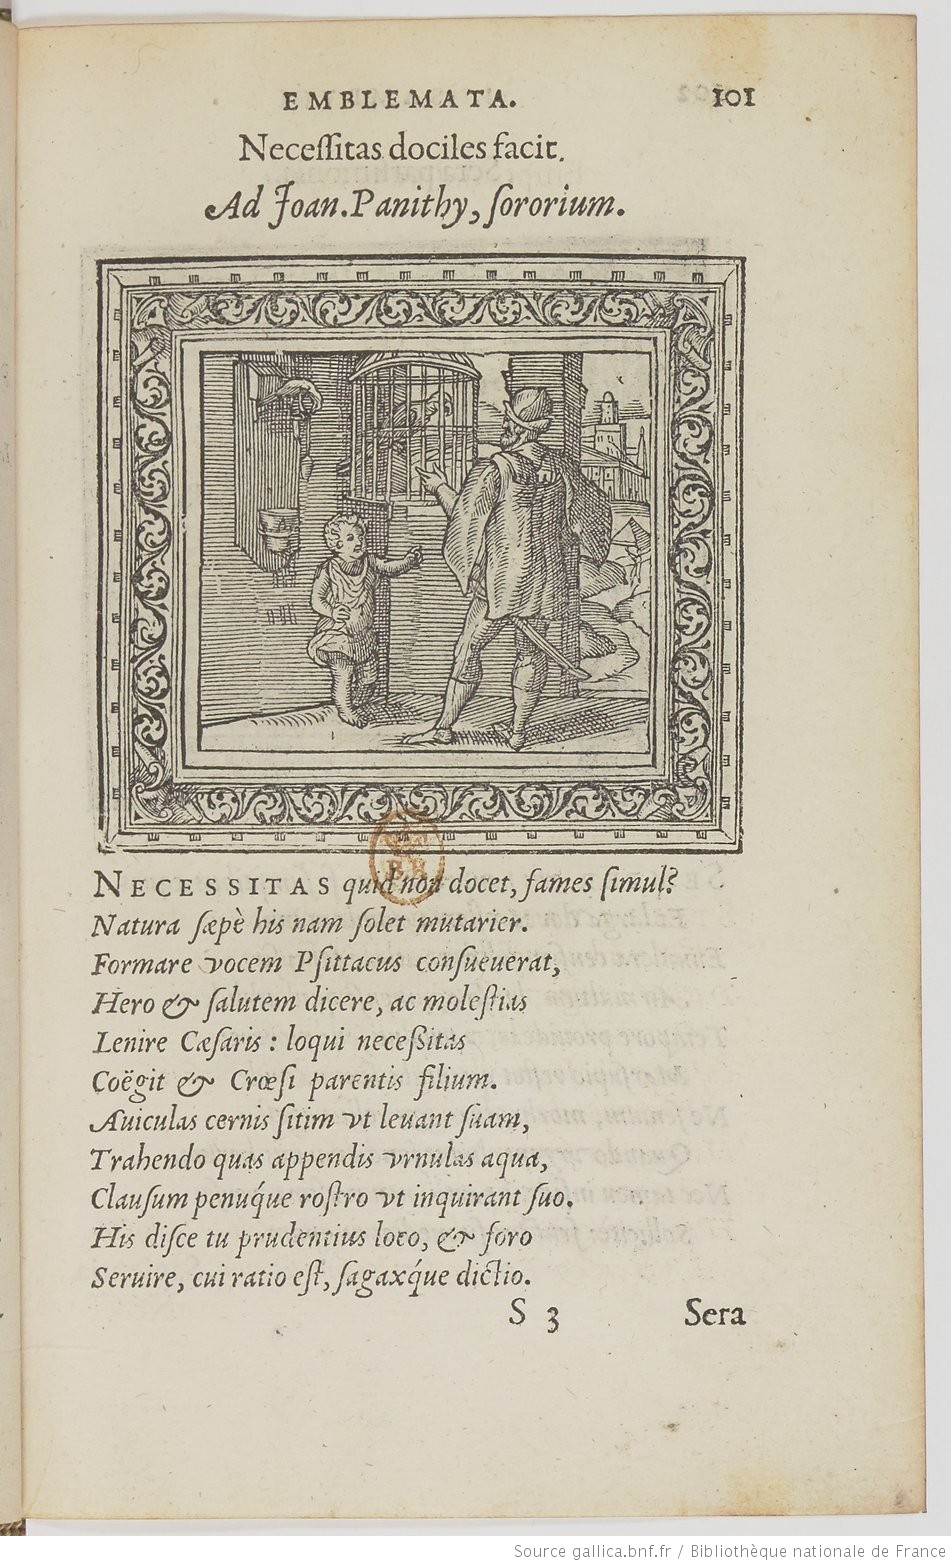 Joannes Sambucus, Emblemata (1564), p 101 BNF Gallica